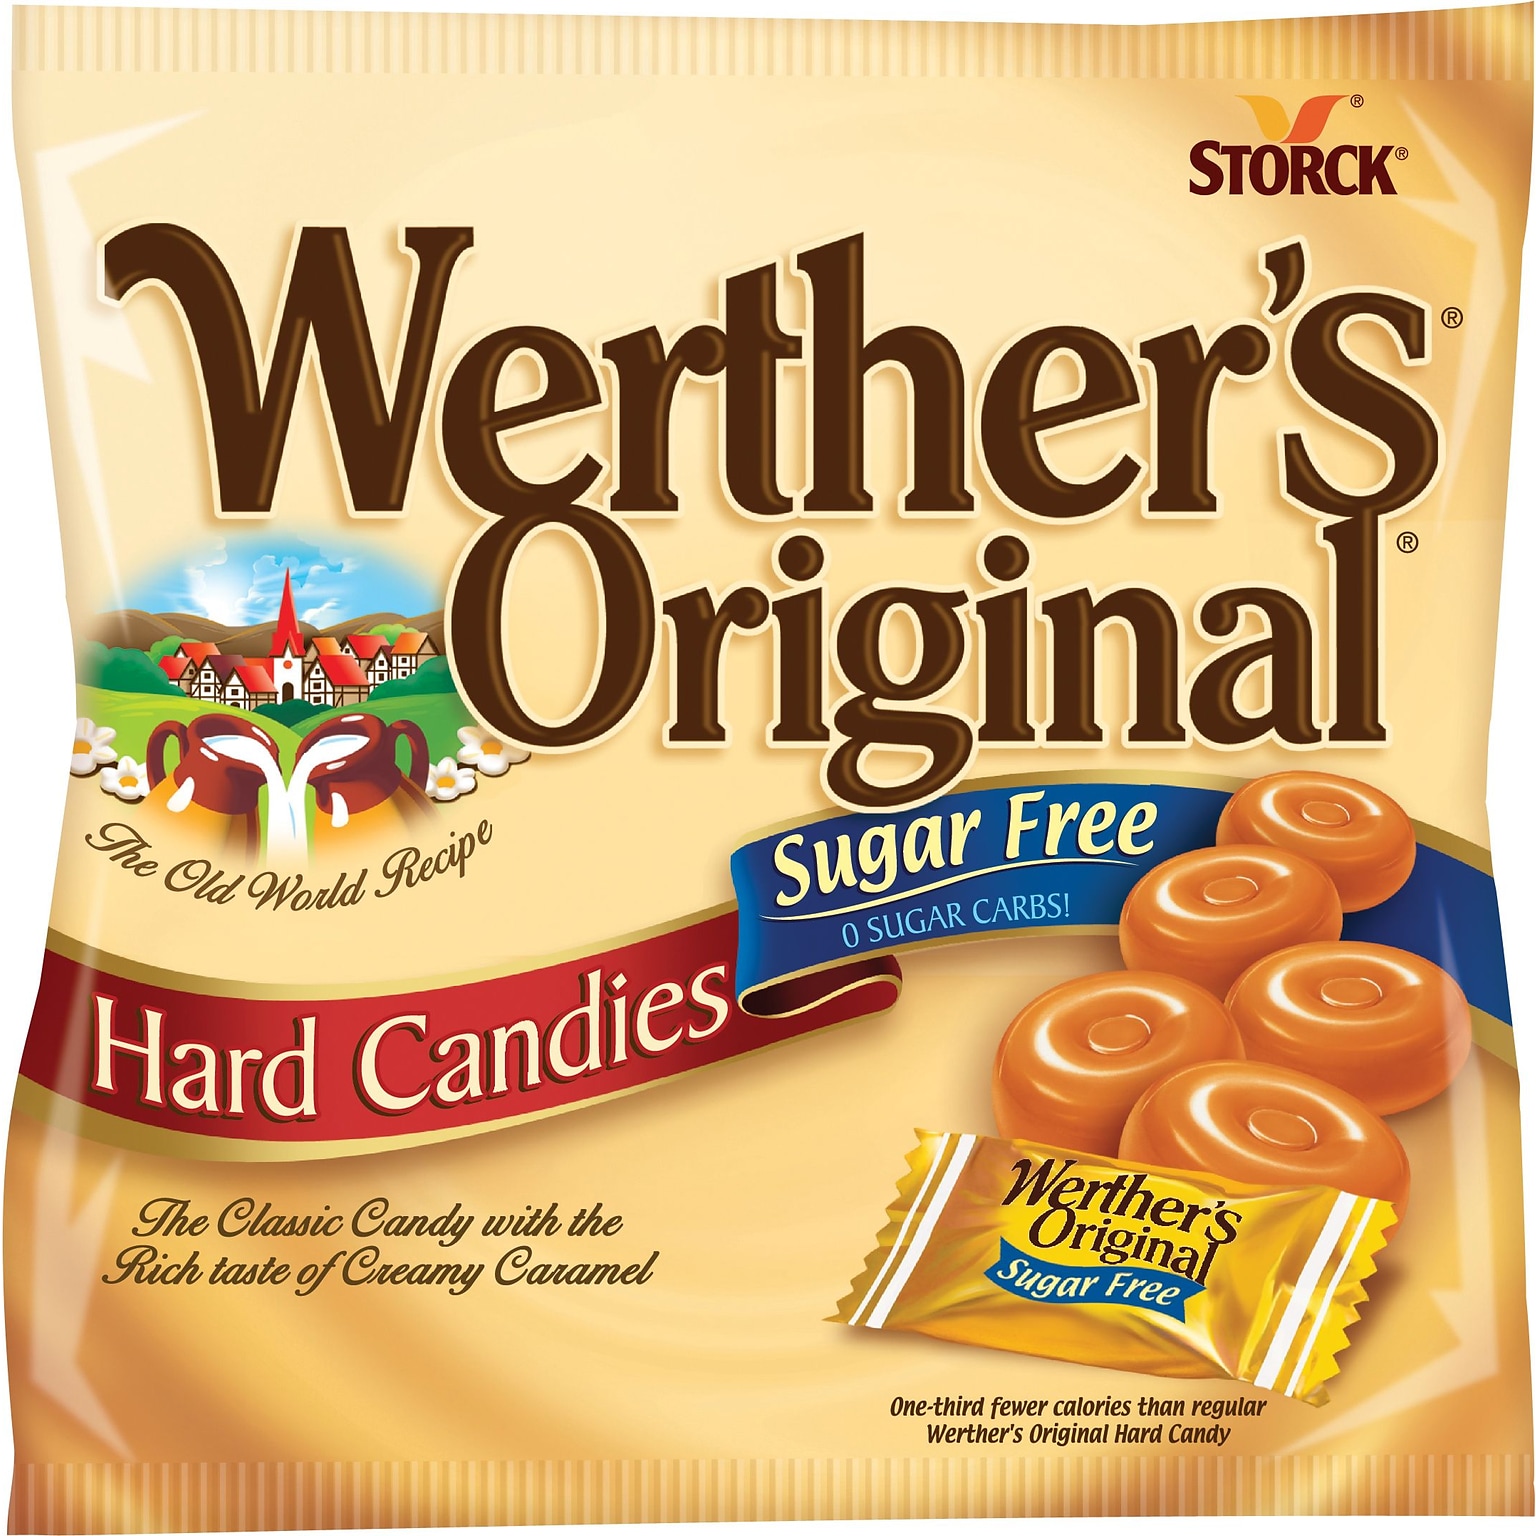 Werthers Original Sugar Free Caramel Hard Candy, 2.75 oz., (SUL831498)